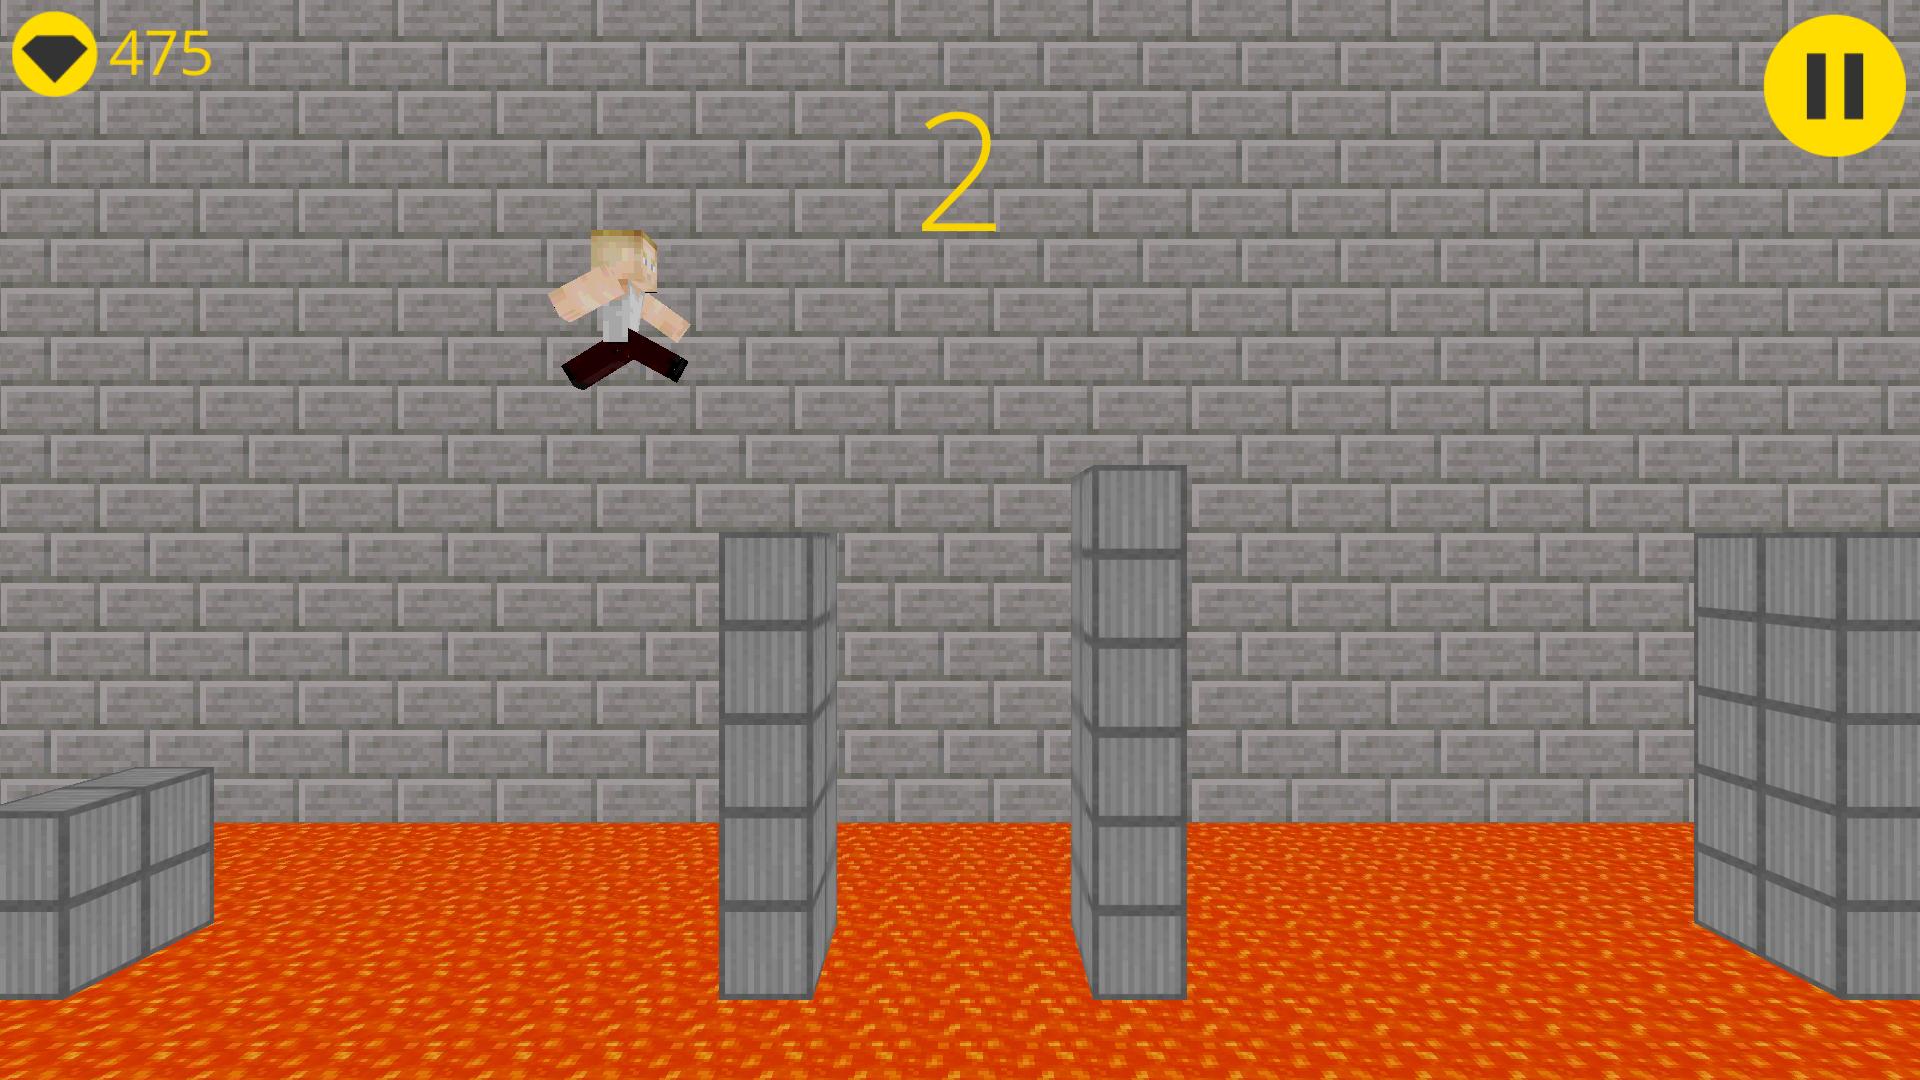 Игра прыгающий мальчик. Игра куб крафт 3д. Игра куб прыгает башня. Кликеры про прыганье под куб. Игра куб прыгает по стенам поднимаясь выше.